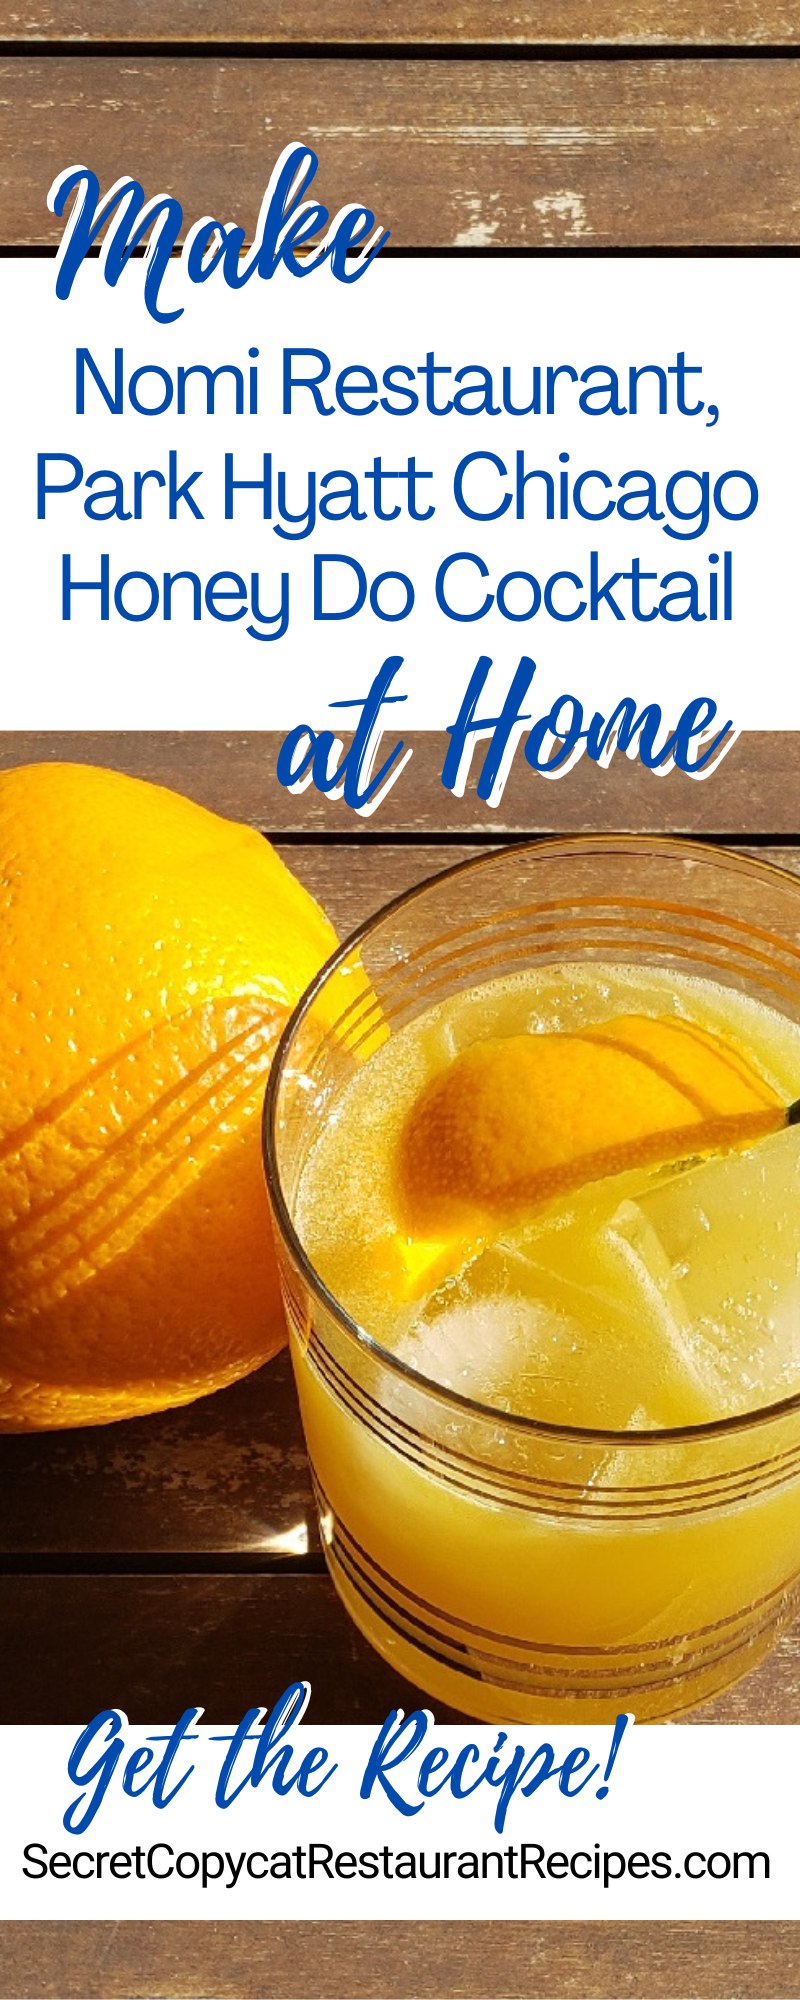 Nomi Restaurant, Park Hyatt Chicago Honey Do Cocktail Recipe